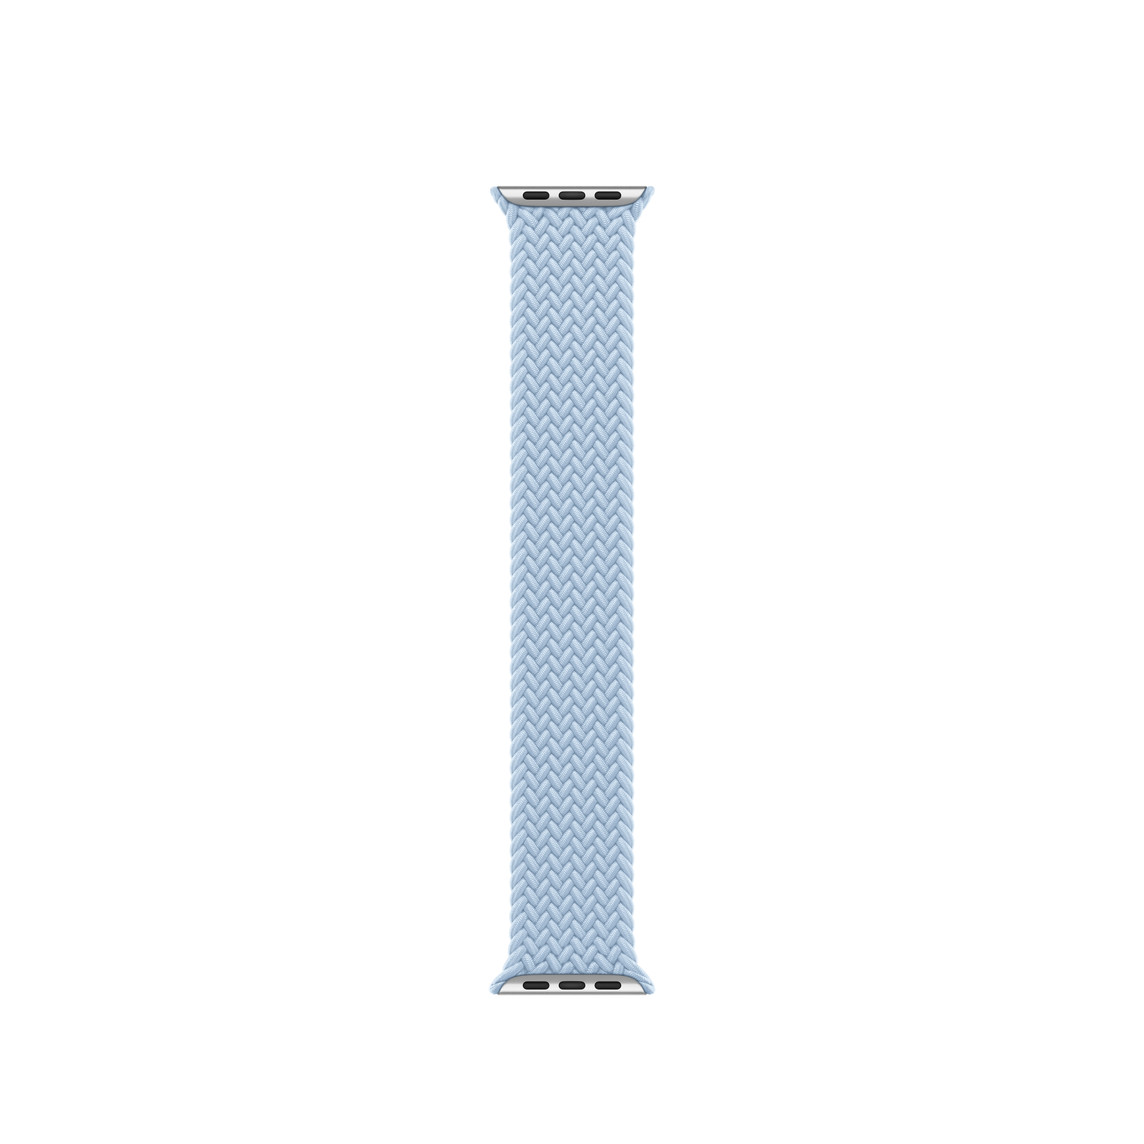 Bracelet solo tressé bleu clair, fil de polyester et de silicone tressé, sans fermoir ni boucle